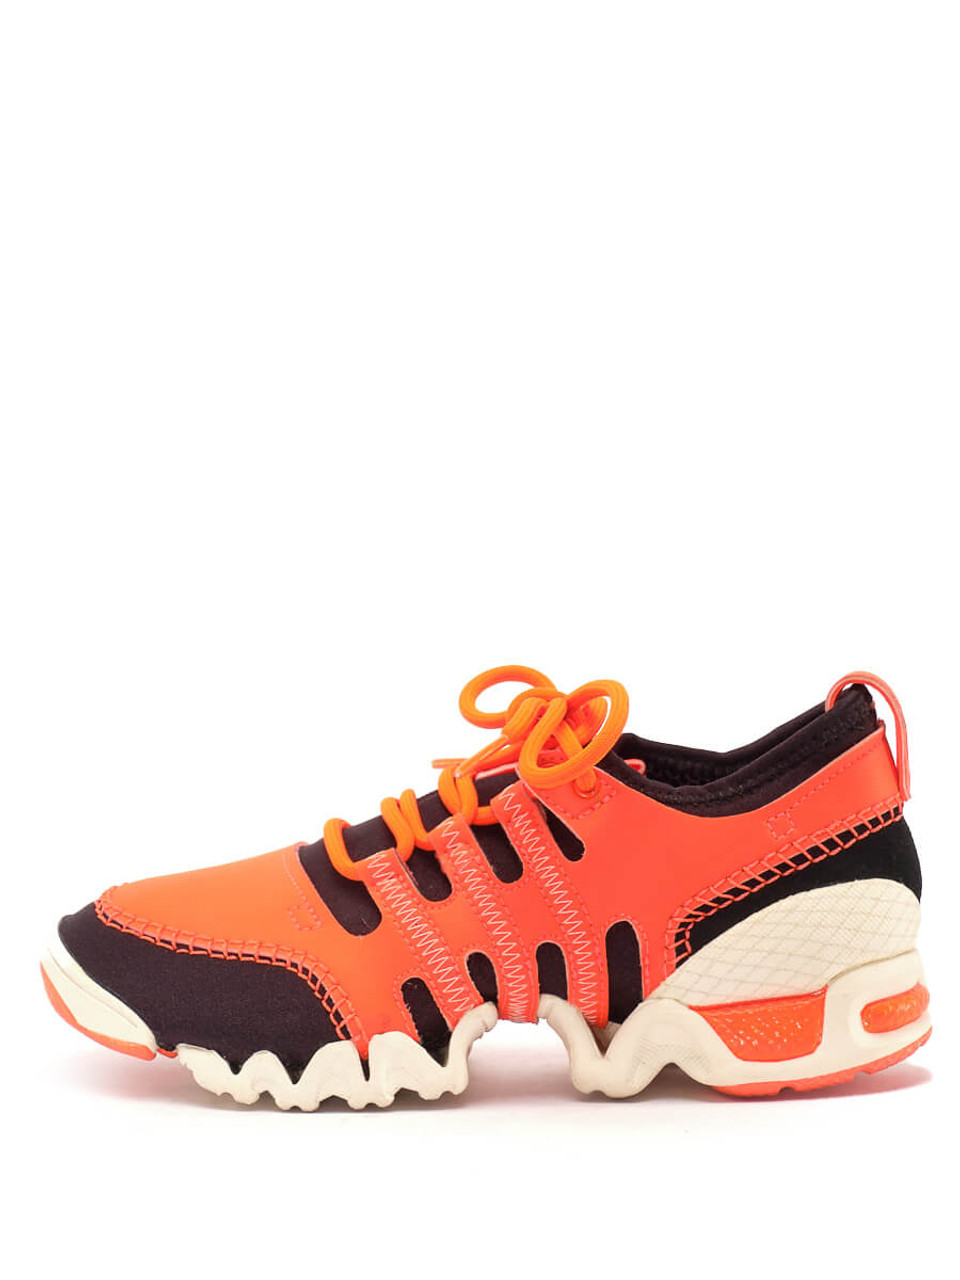 Adidas Orange SLVR S-M-L Concept Shoes